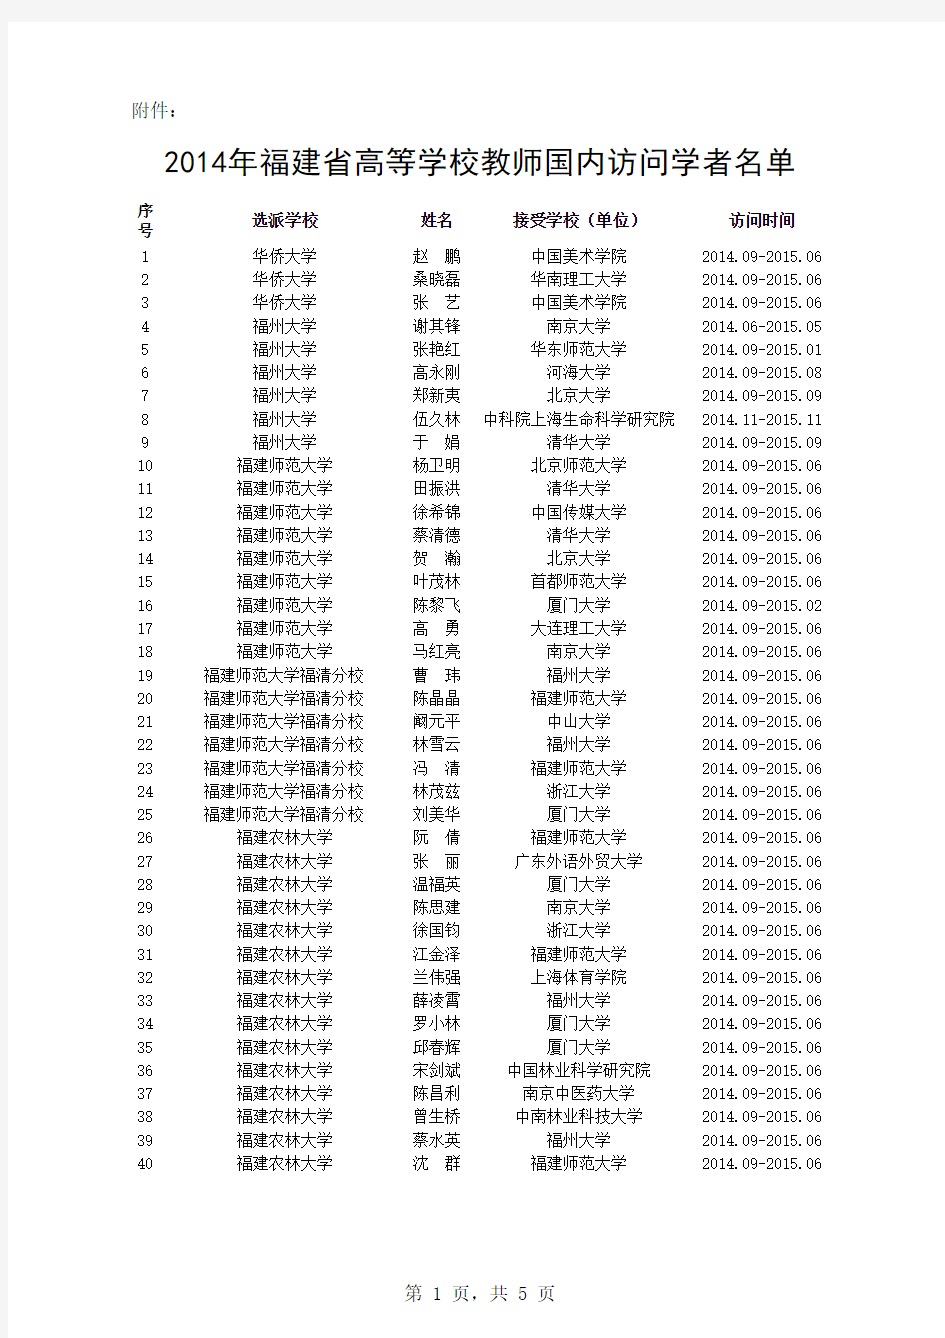 2014年福建省高等学校教师国内访问学者名单(确认名单202人,新) - 副本 (1)